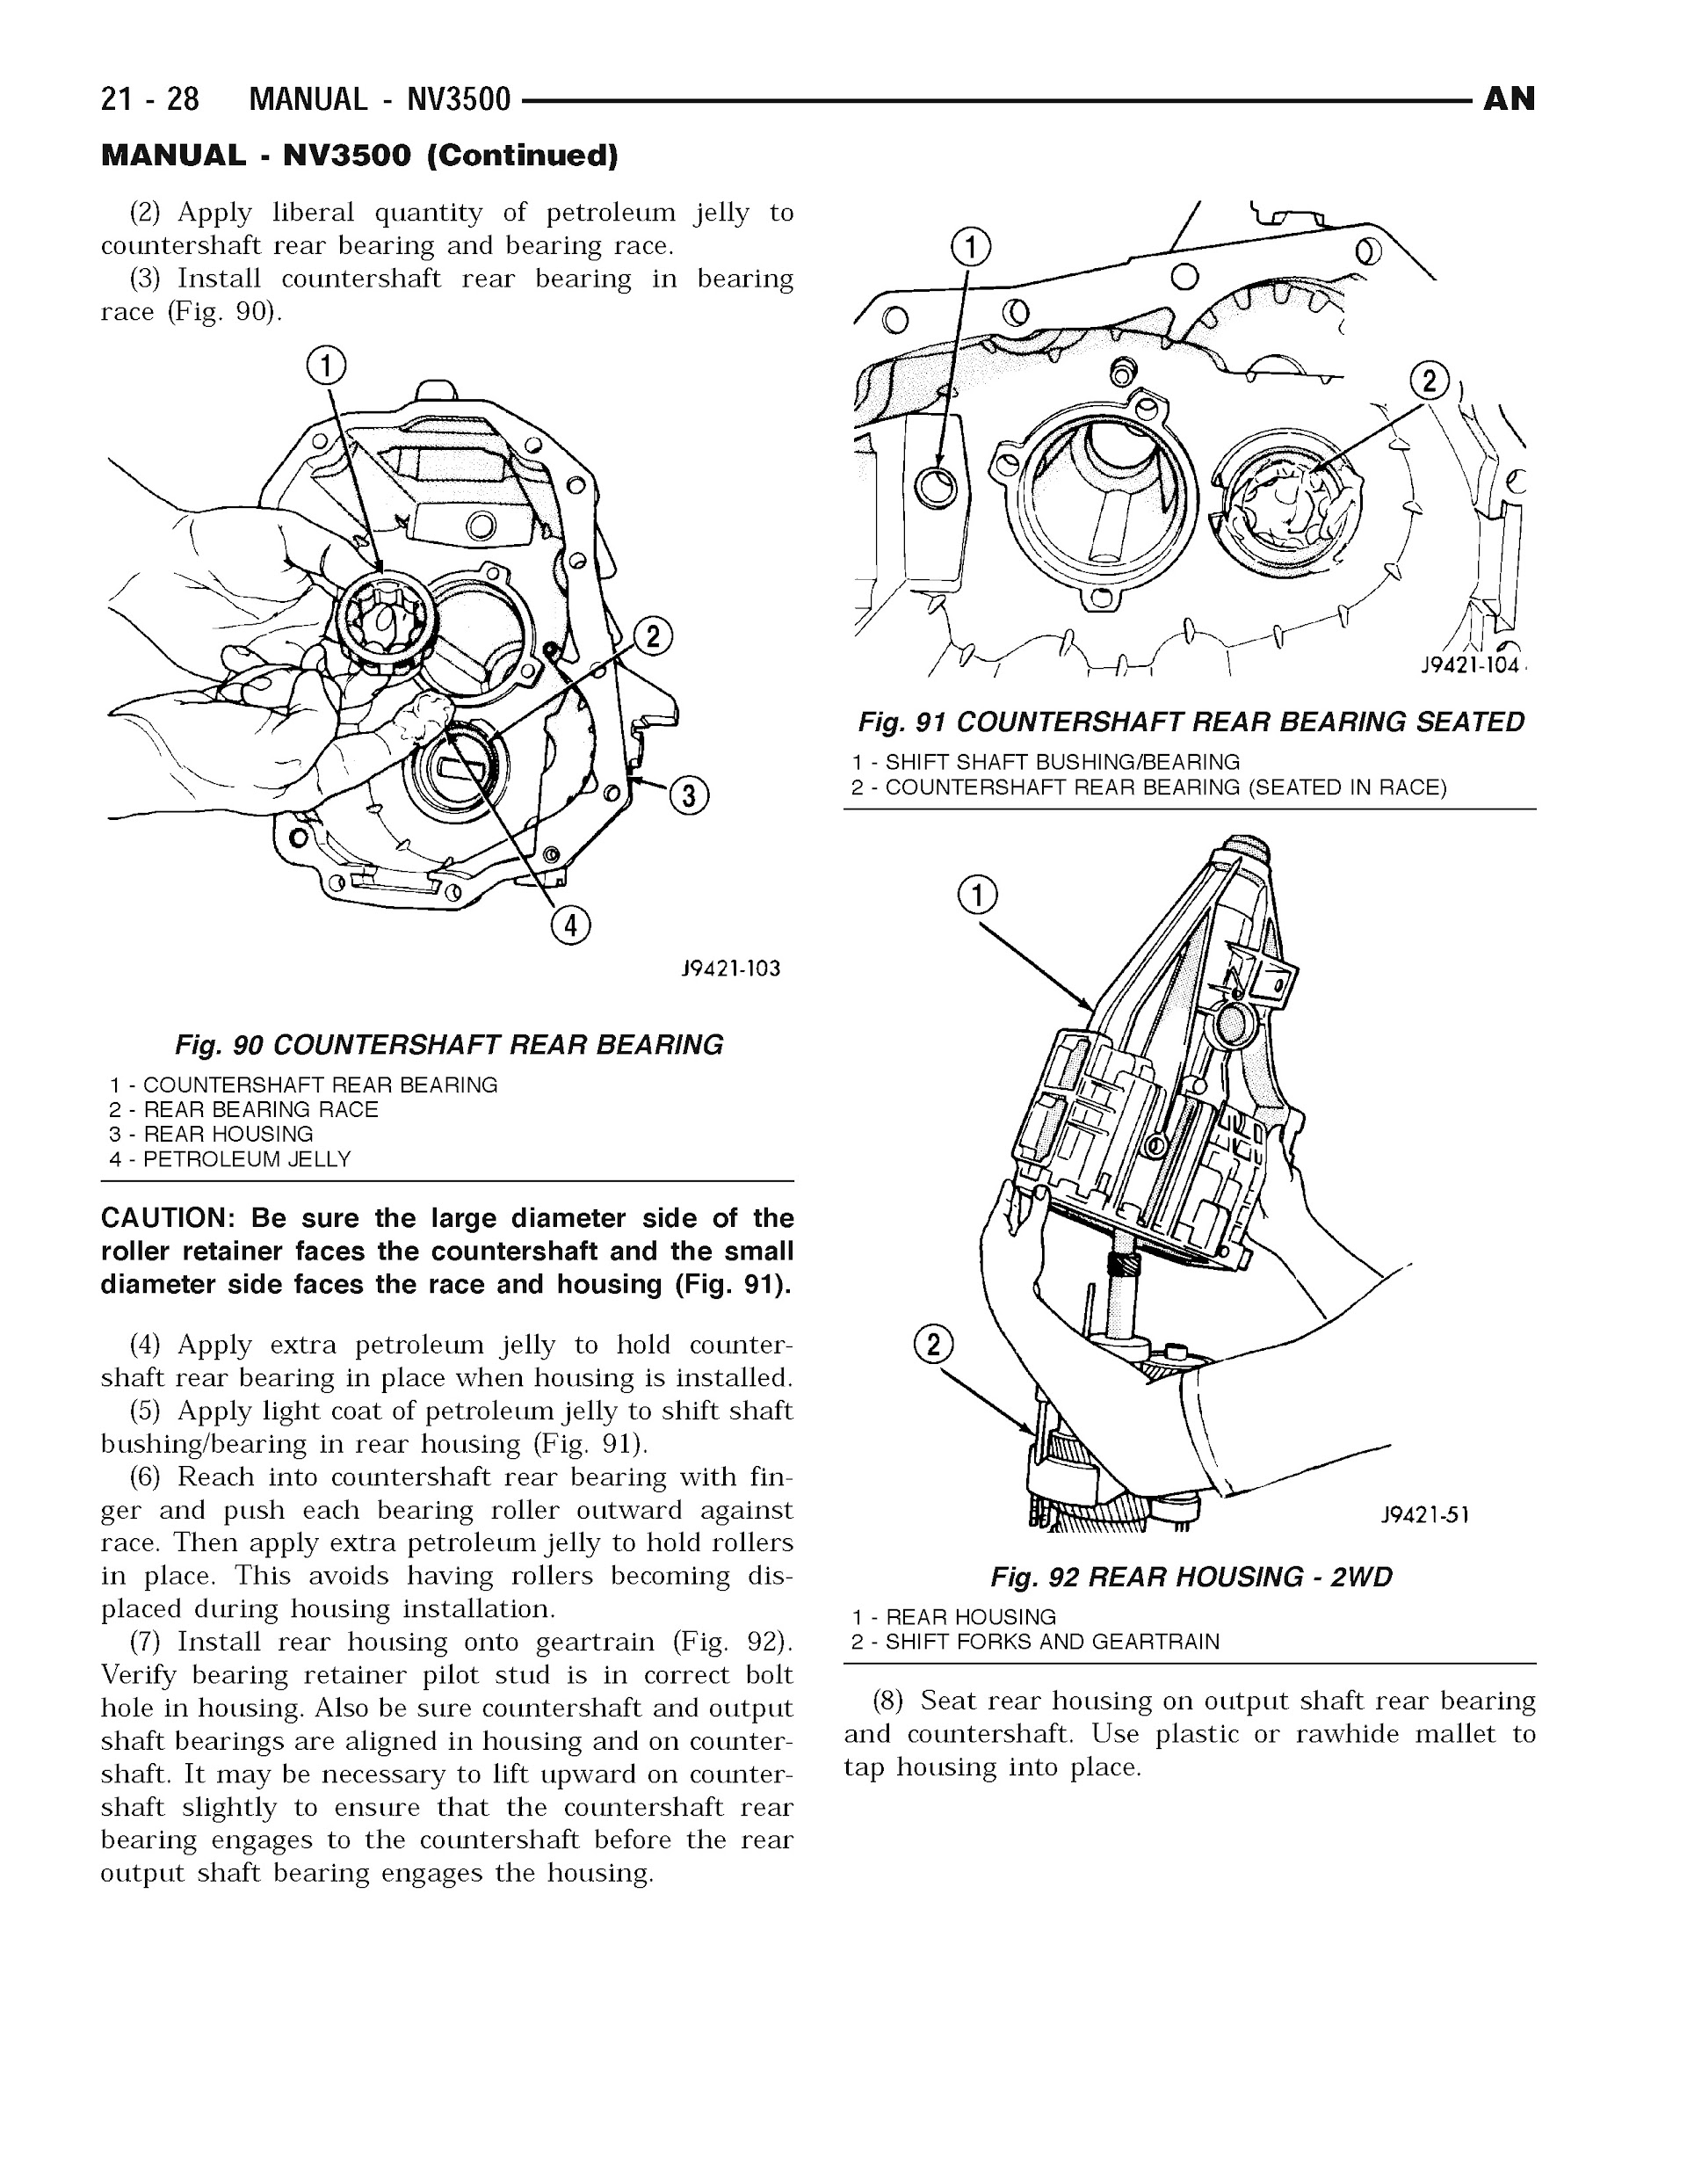 2004 Dodge Dakota Repair Manual, NV3500